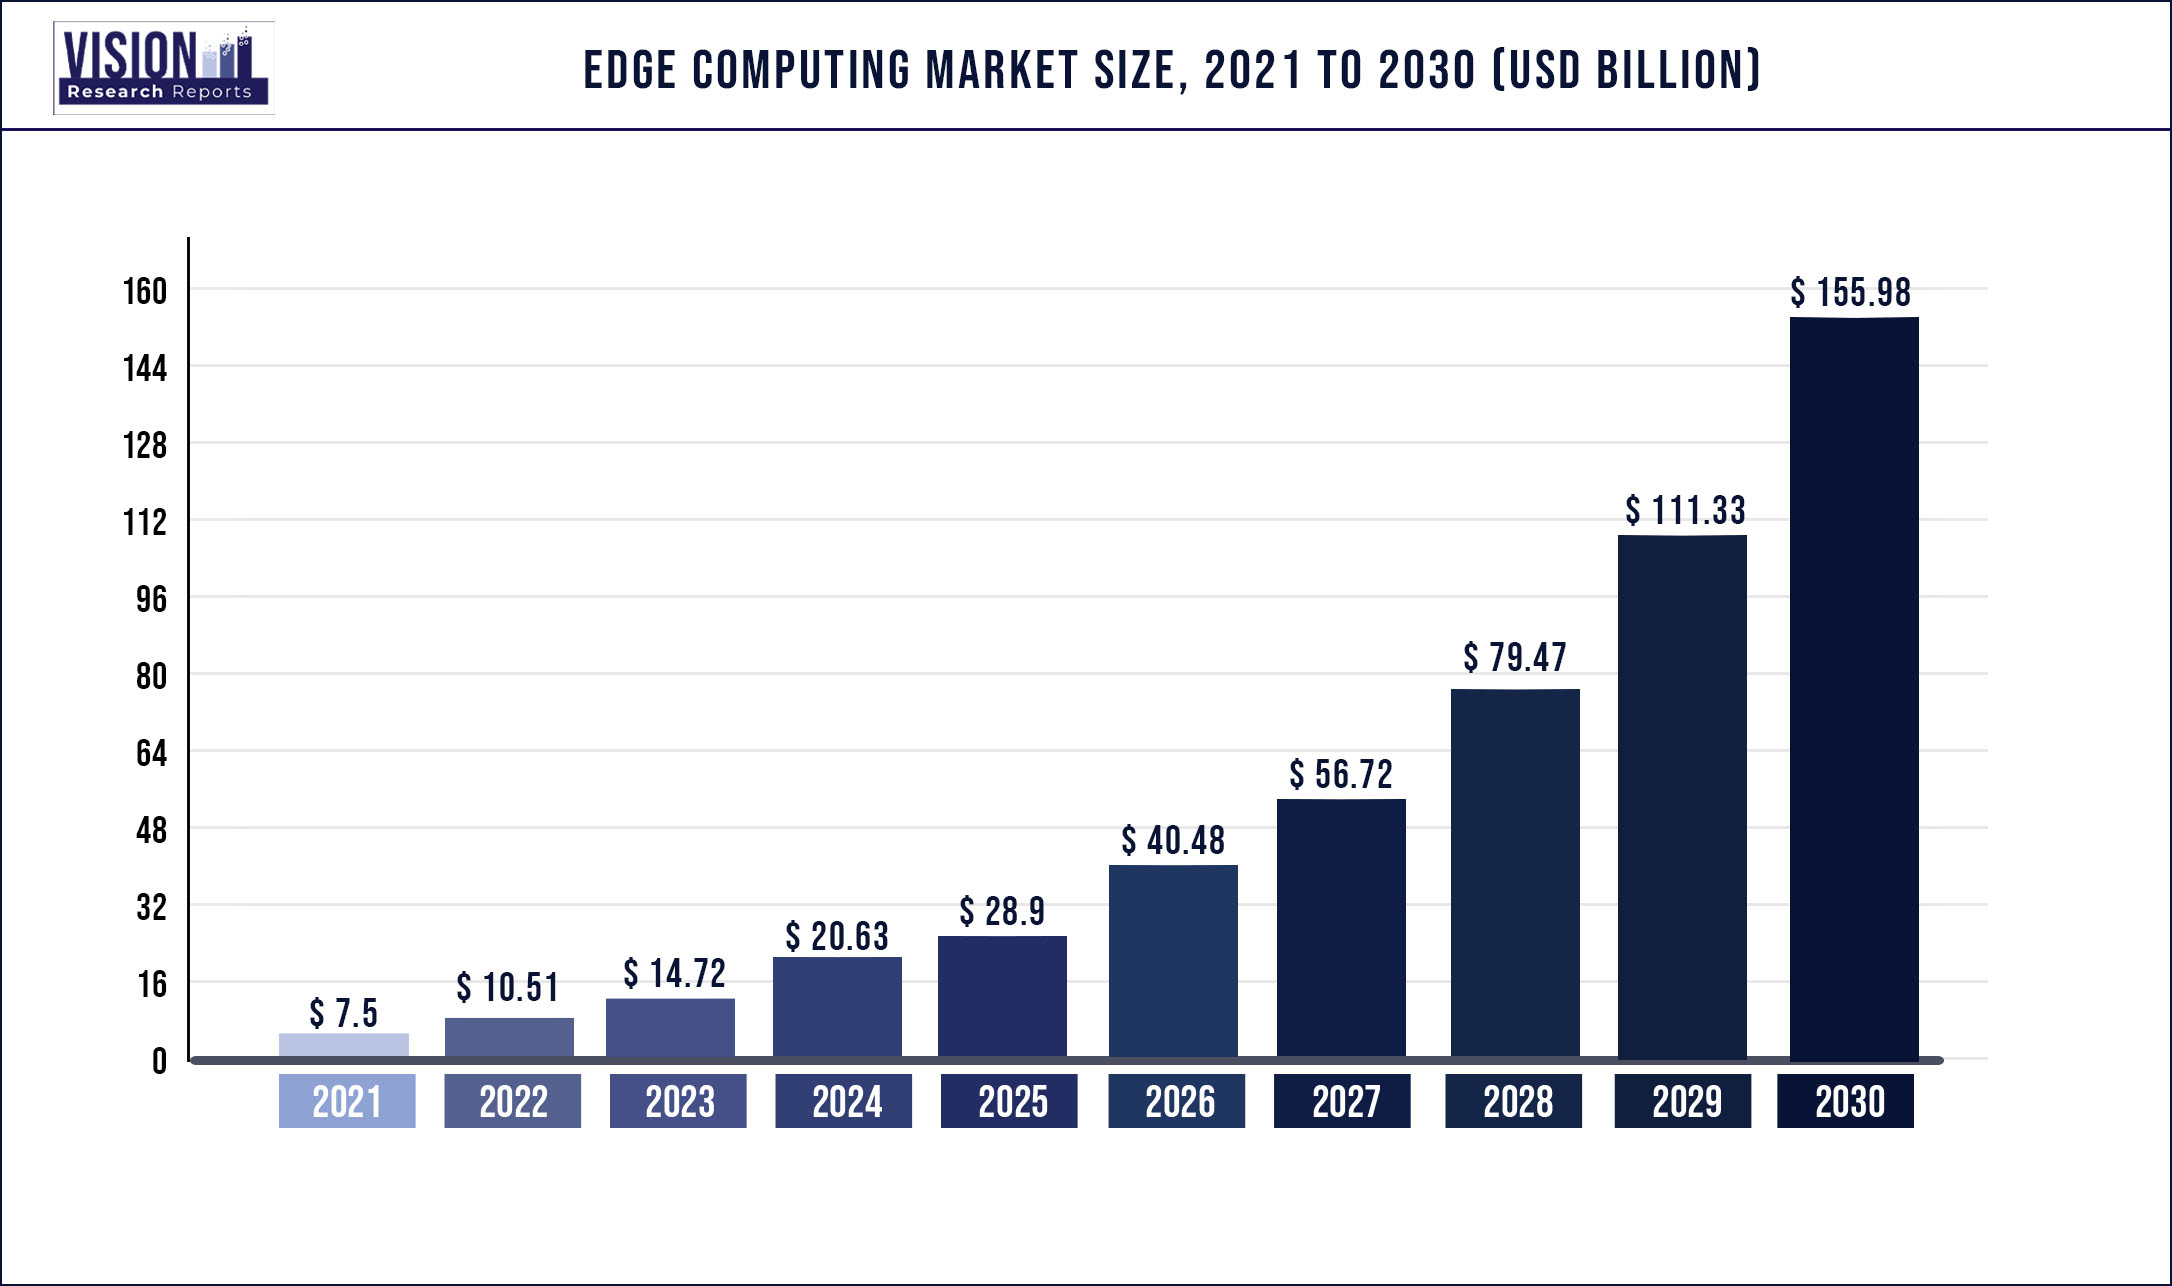 Edge Computing Market Size 2021 to 2030